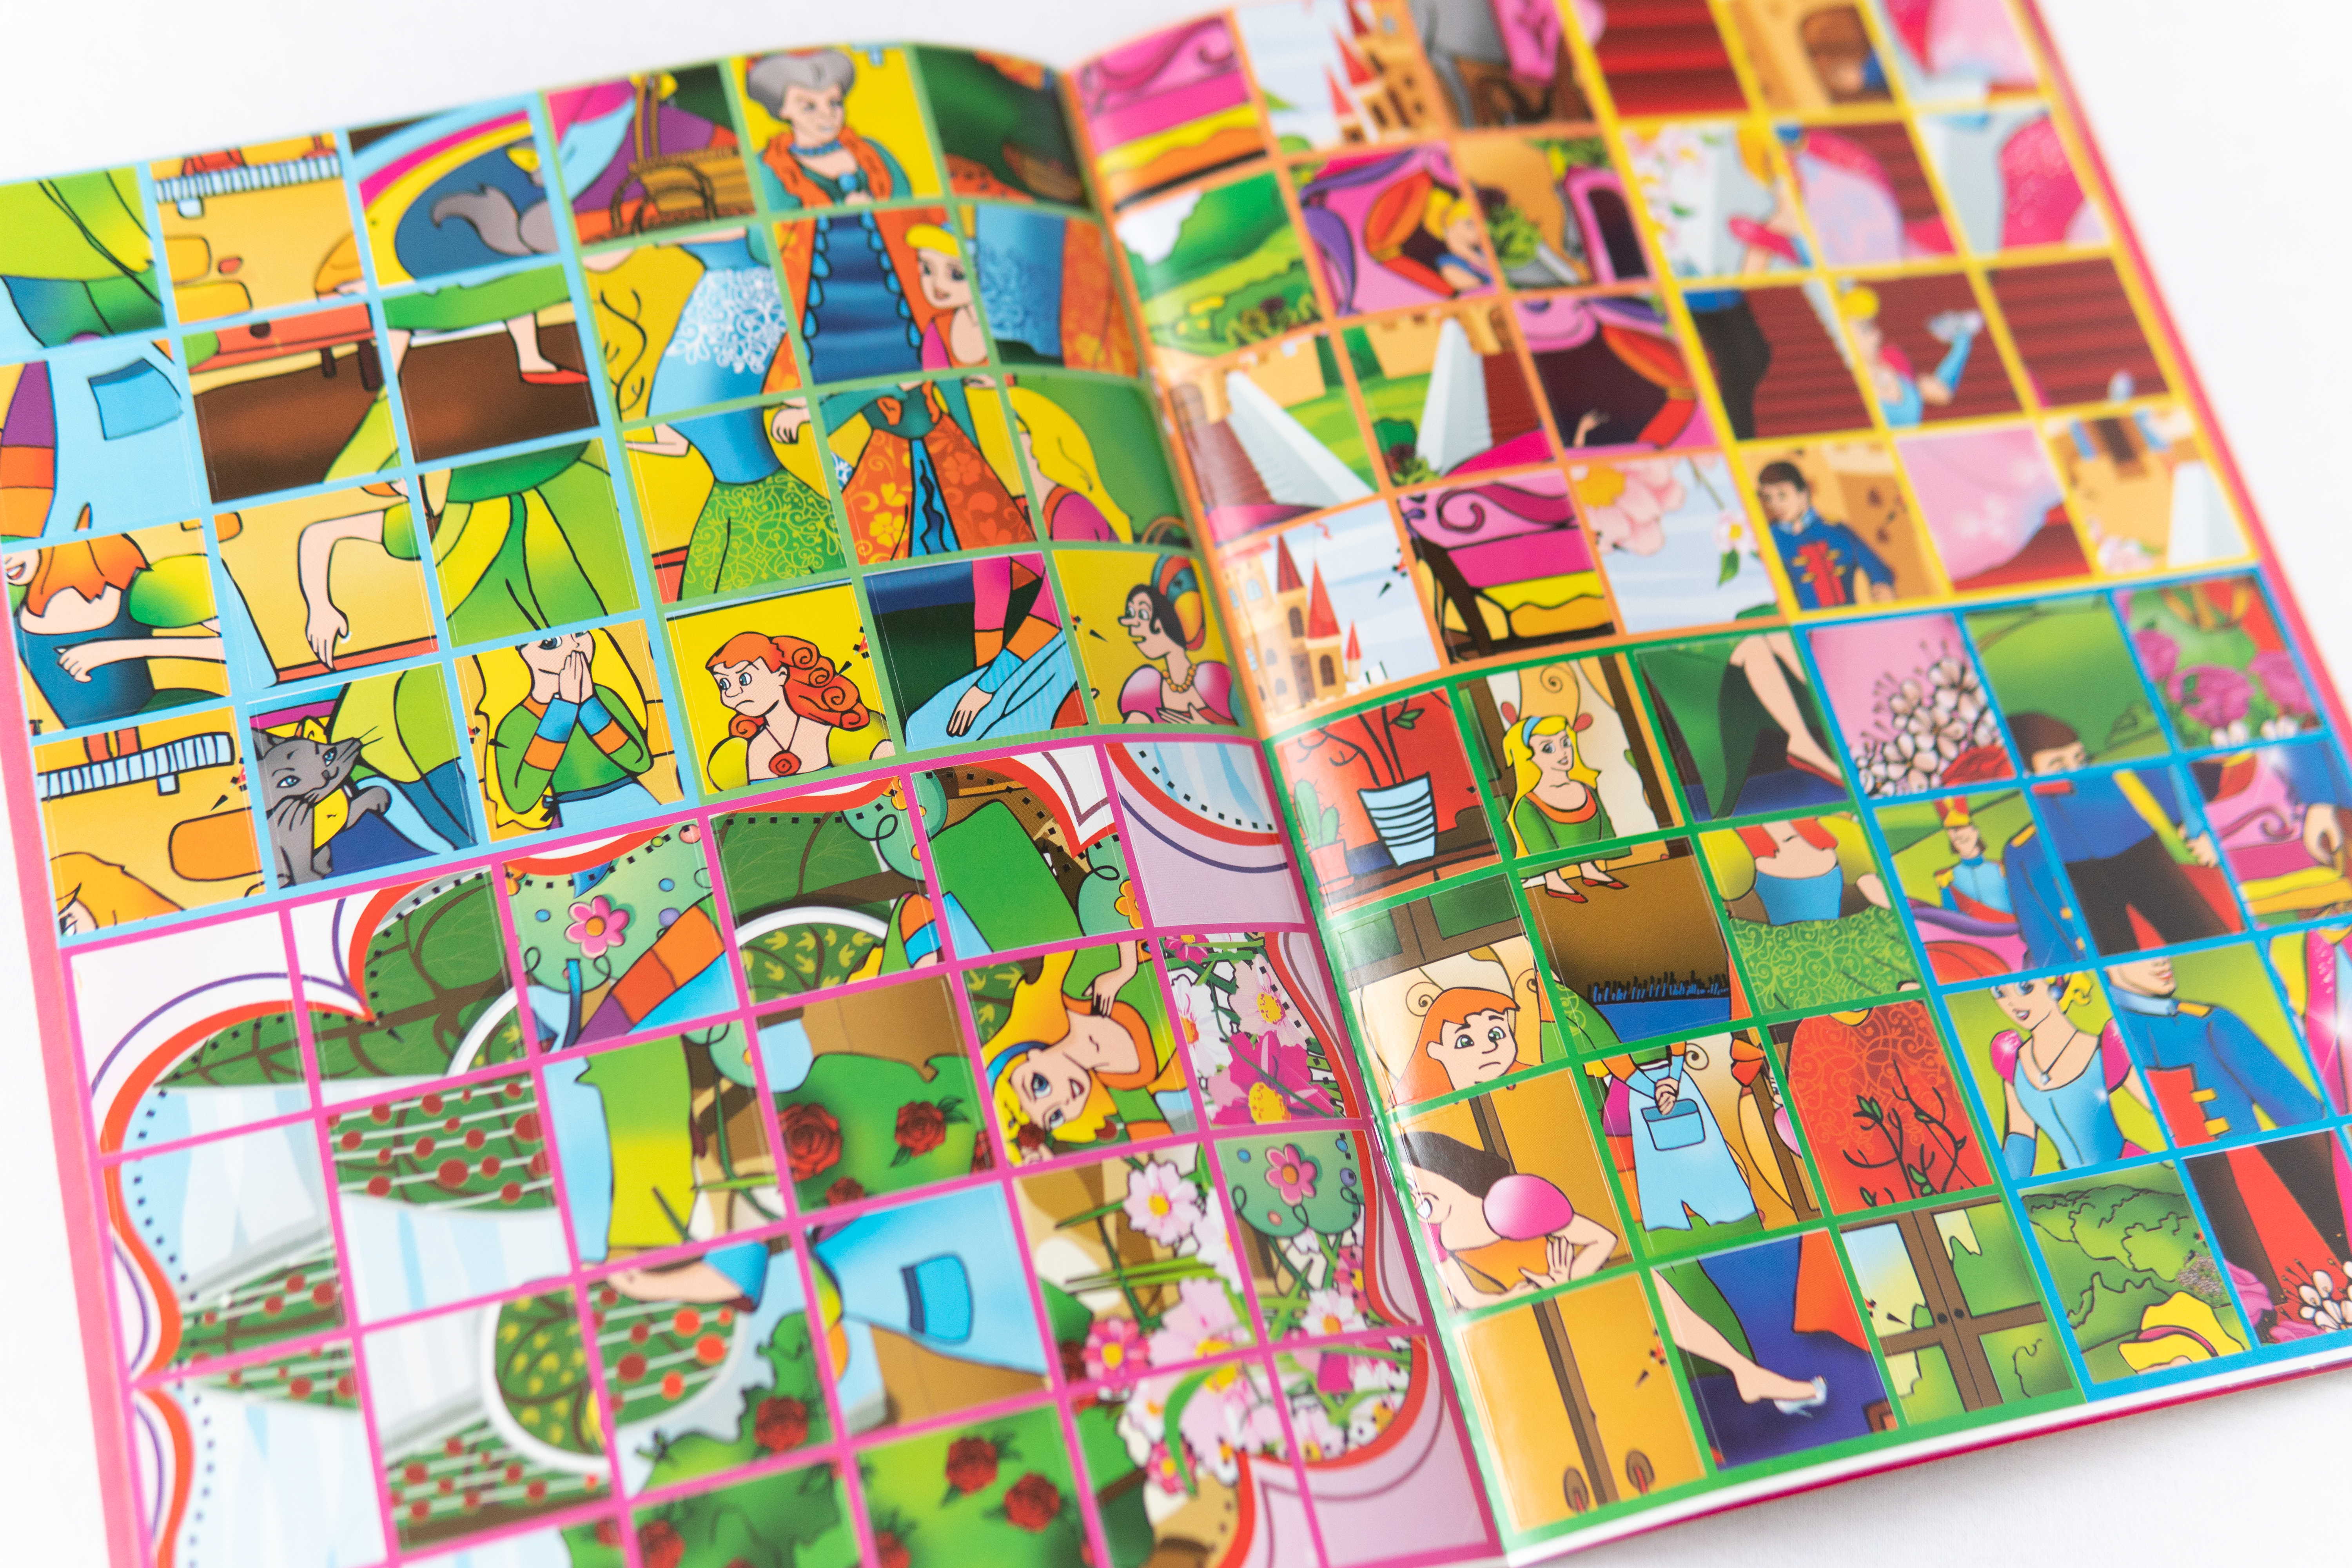 Beliebte Märchengeschichten Aschenputtel ist ein Kinderbuch auf Ukrainisch